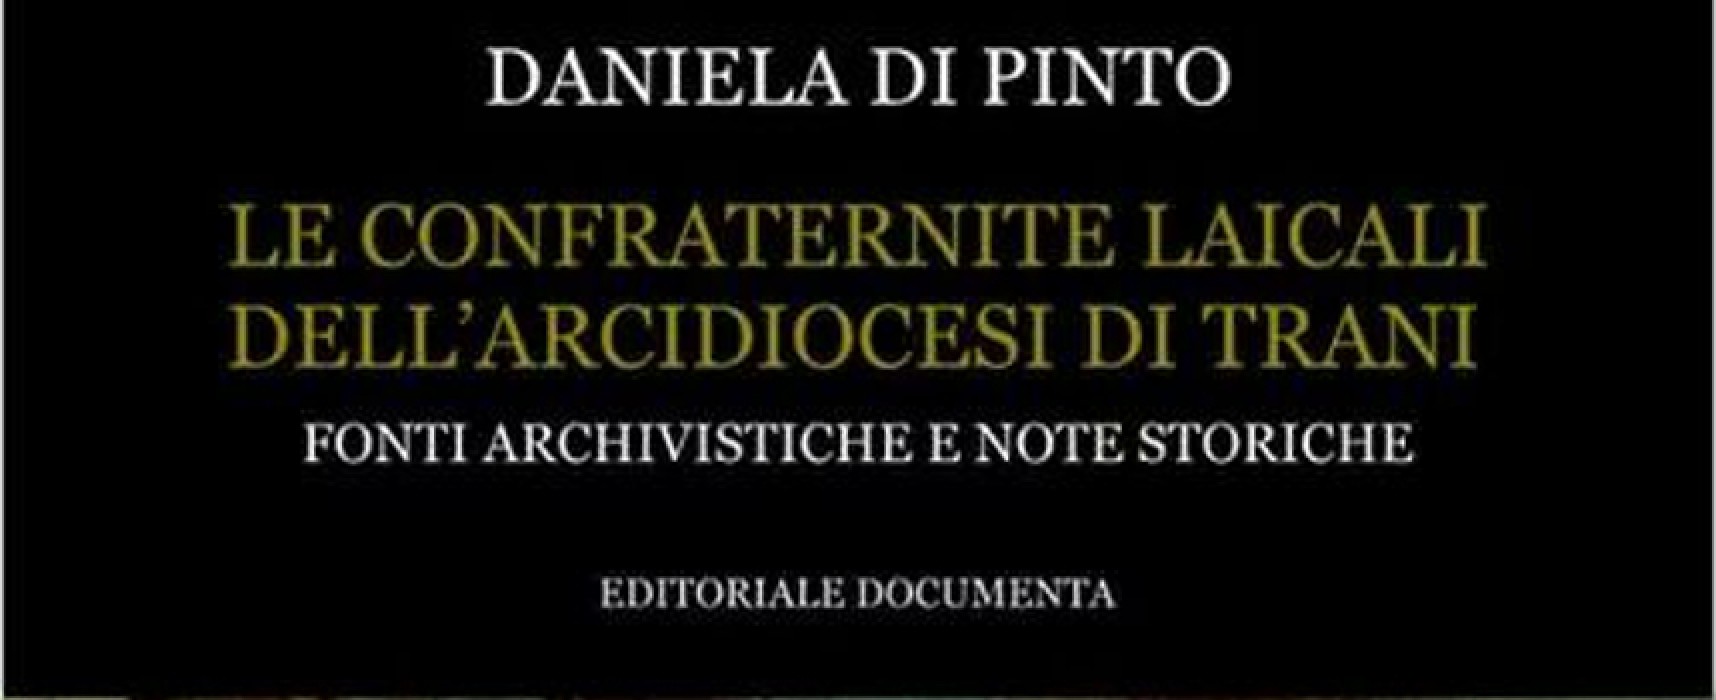 “Le confraternite laicali”, il 17 marzo presentazione del libro vincitore del “Premio Nazionale Bibliographica”